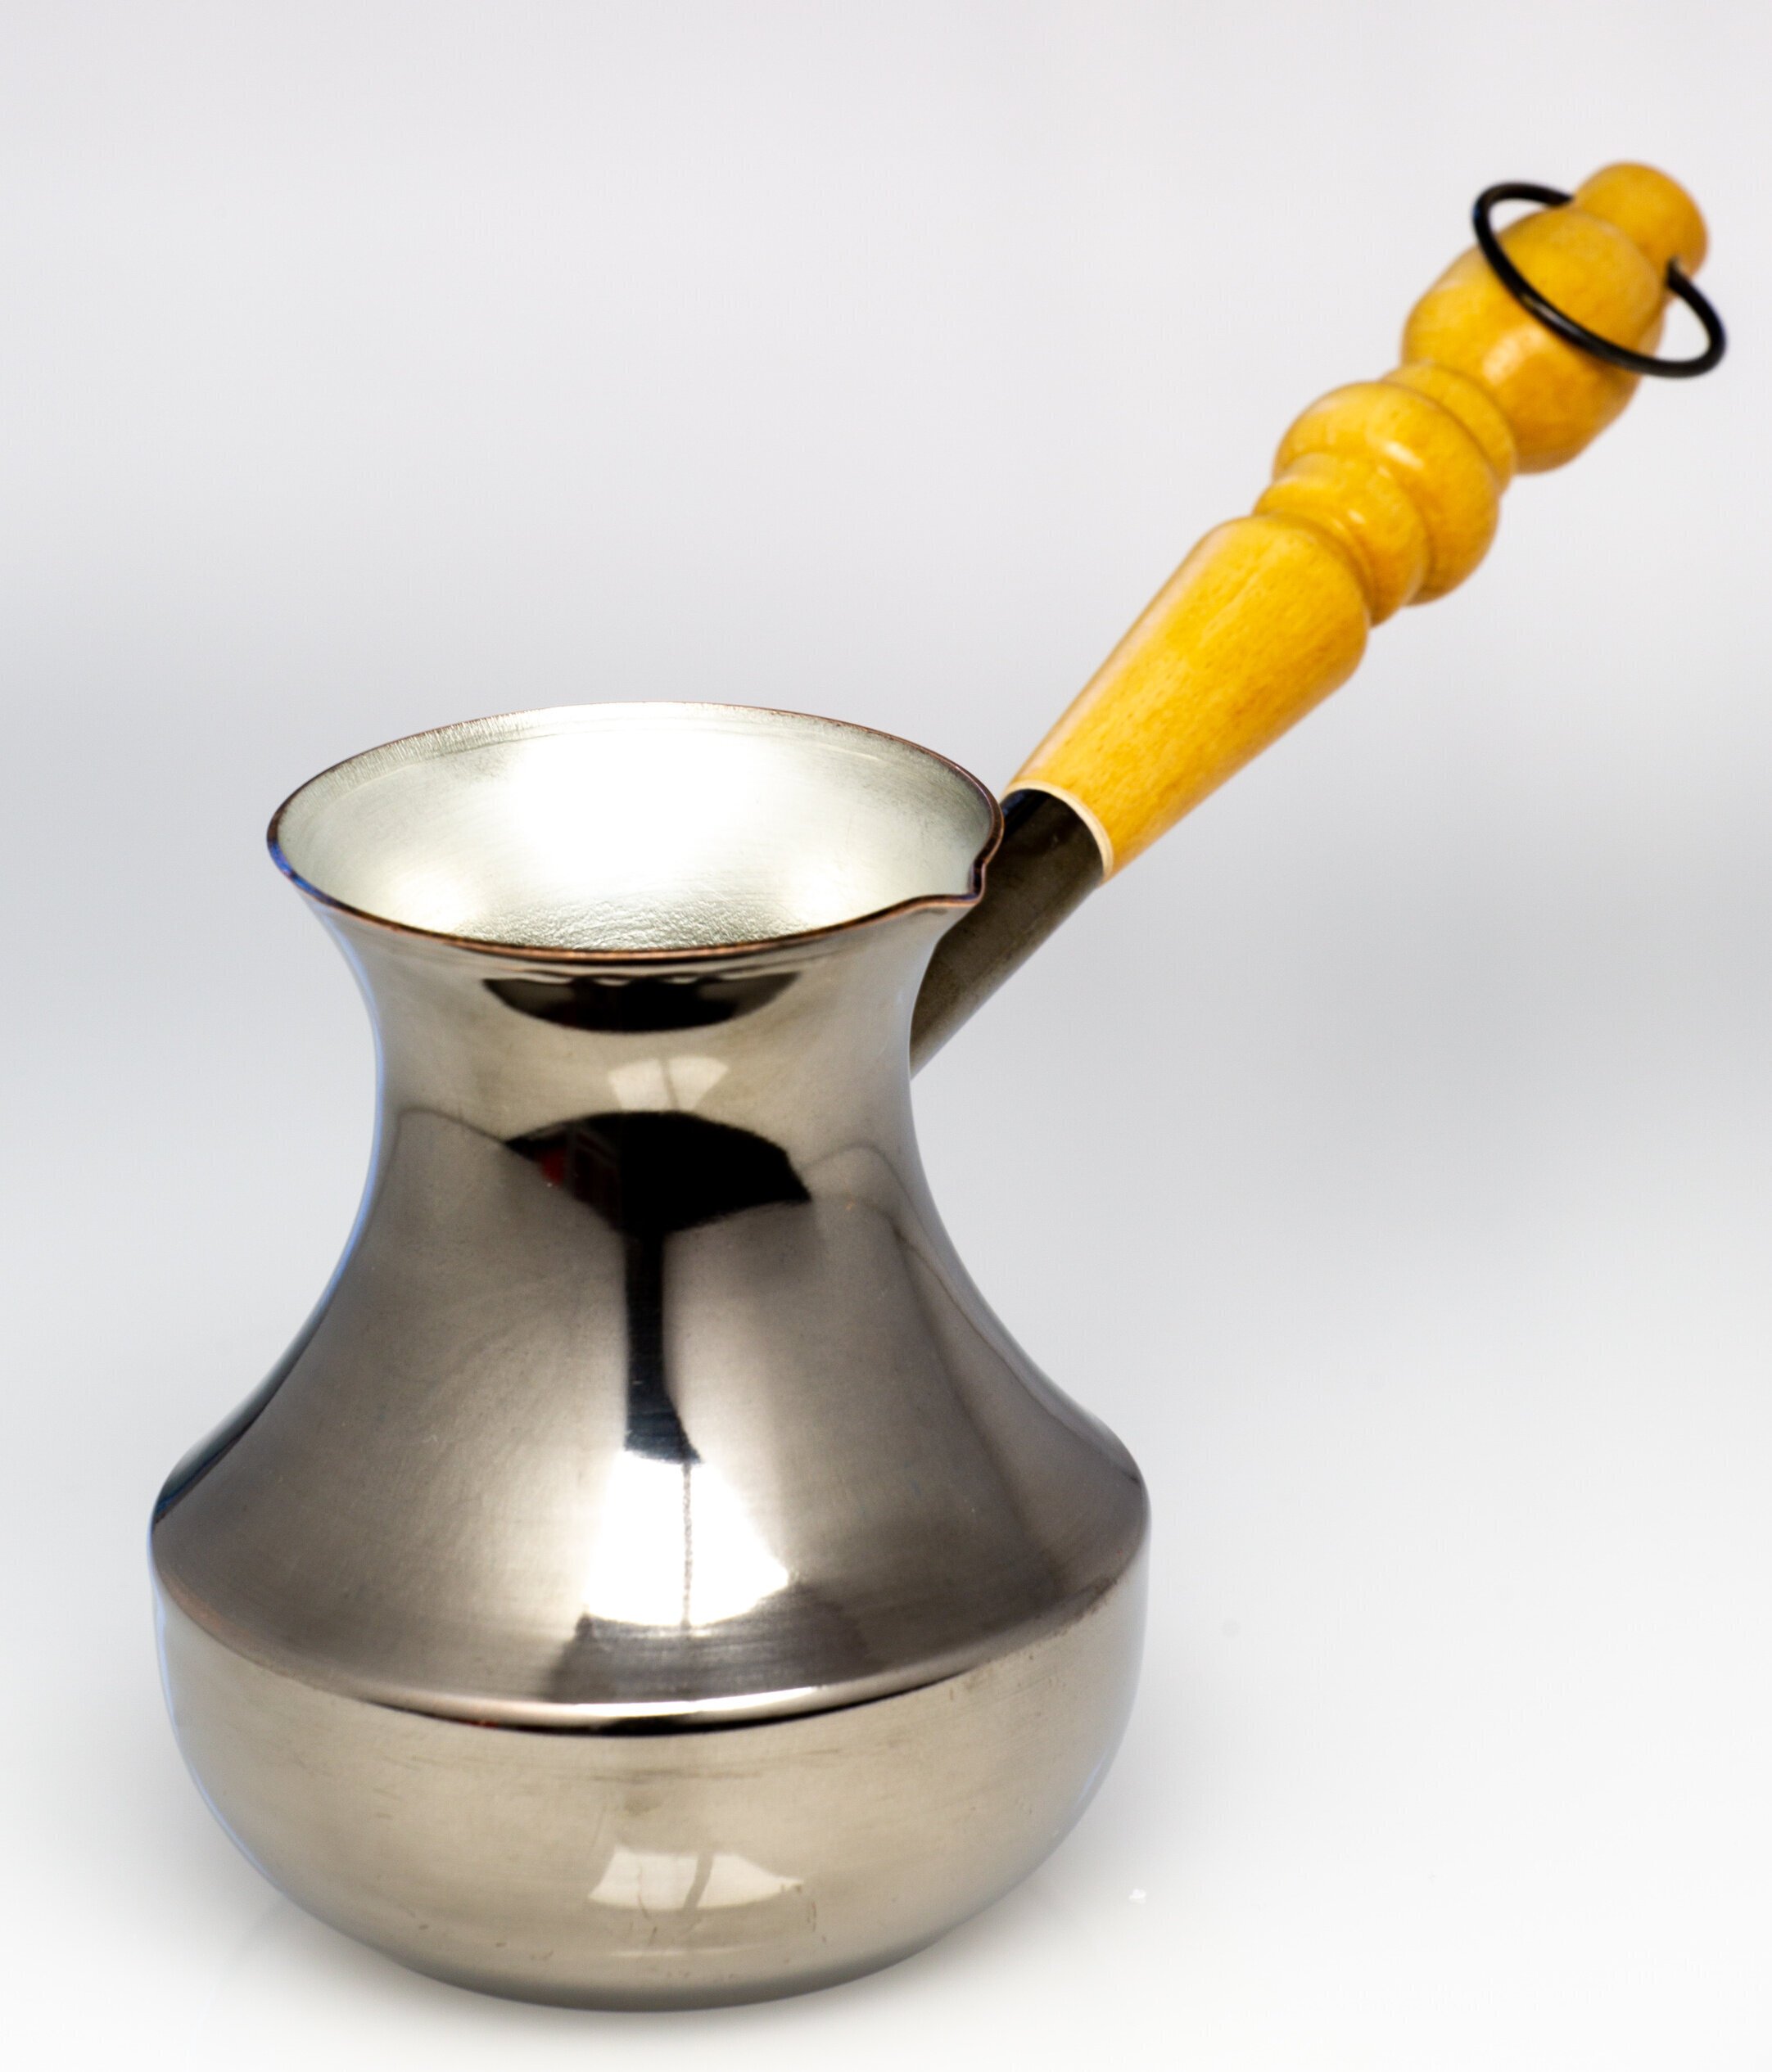 Varinis kavinukas turkiškos kavos ritinėlis puodelis turka cezva ibrik  „Svajonė“ su medine rankena, 280 ml kaina | pigu.lt